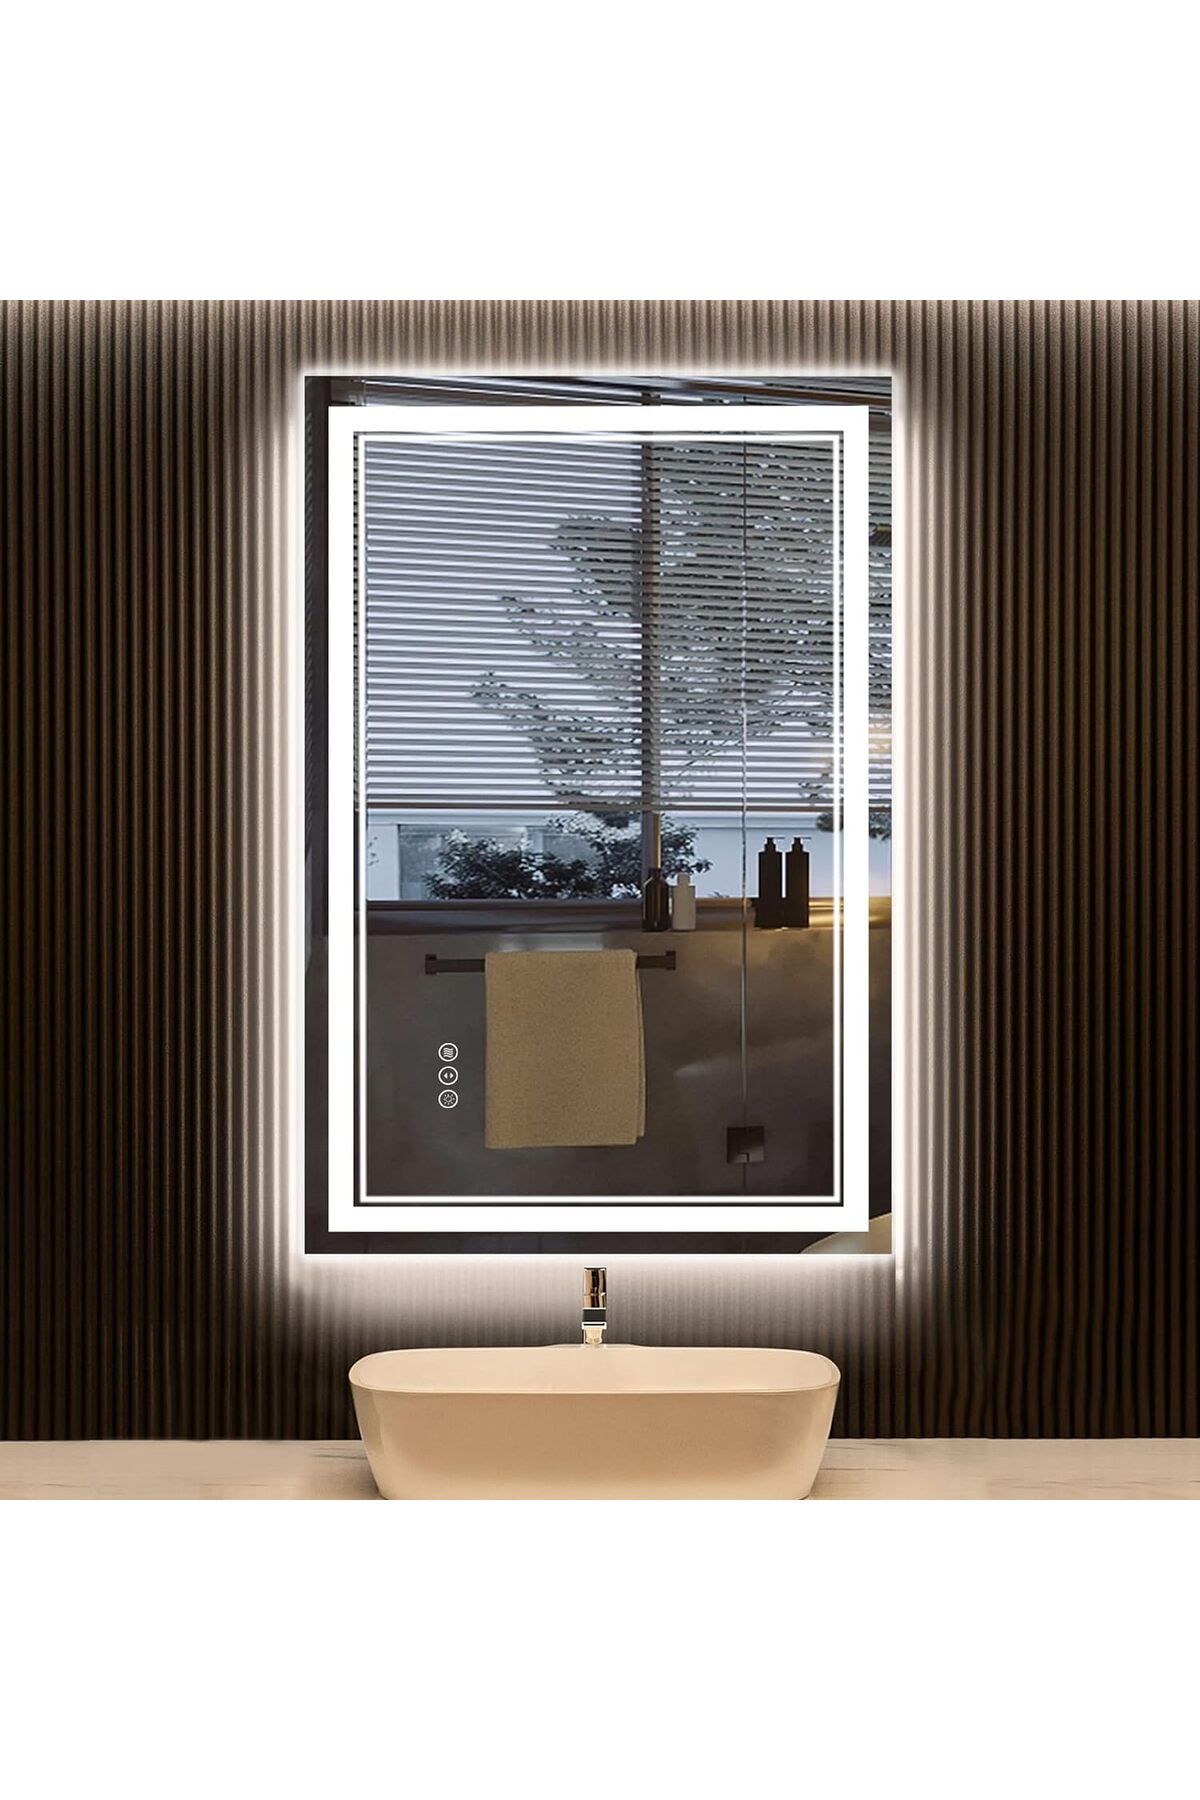 AWANDEE Güçlü Aydınlatma ve Akıllı İşlevlerle Donatılmış LED Banyo Aynası: Ön ve Arkadan Aydınlatmalı